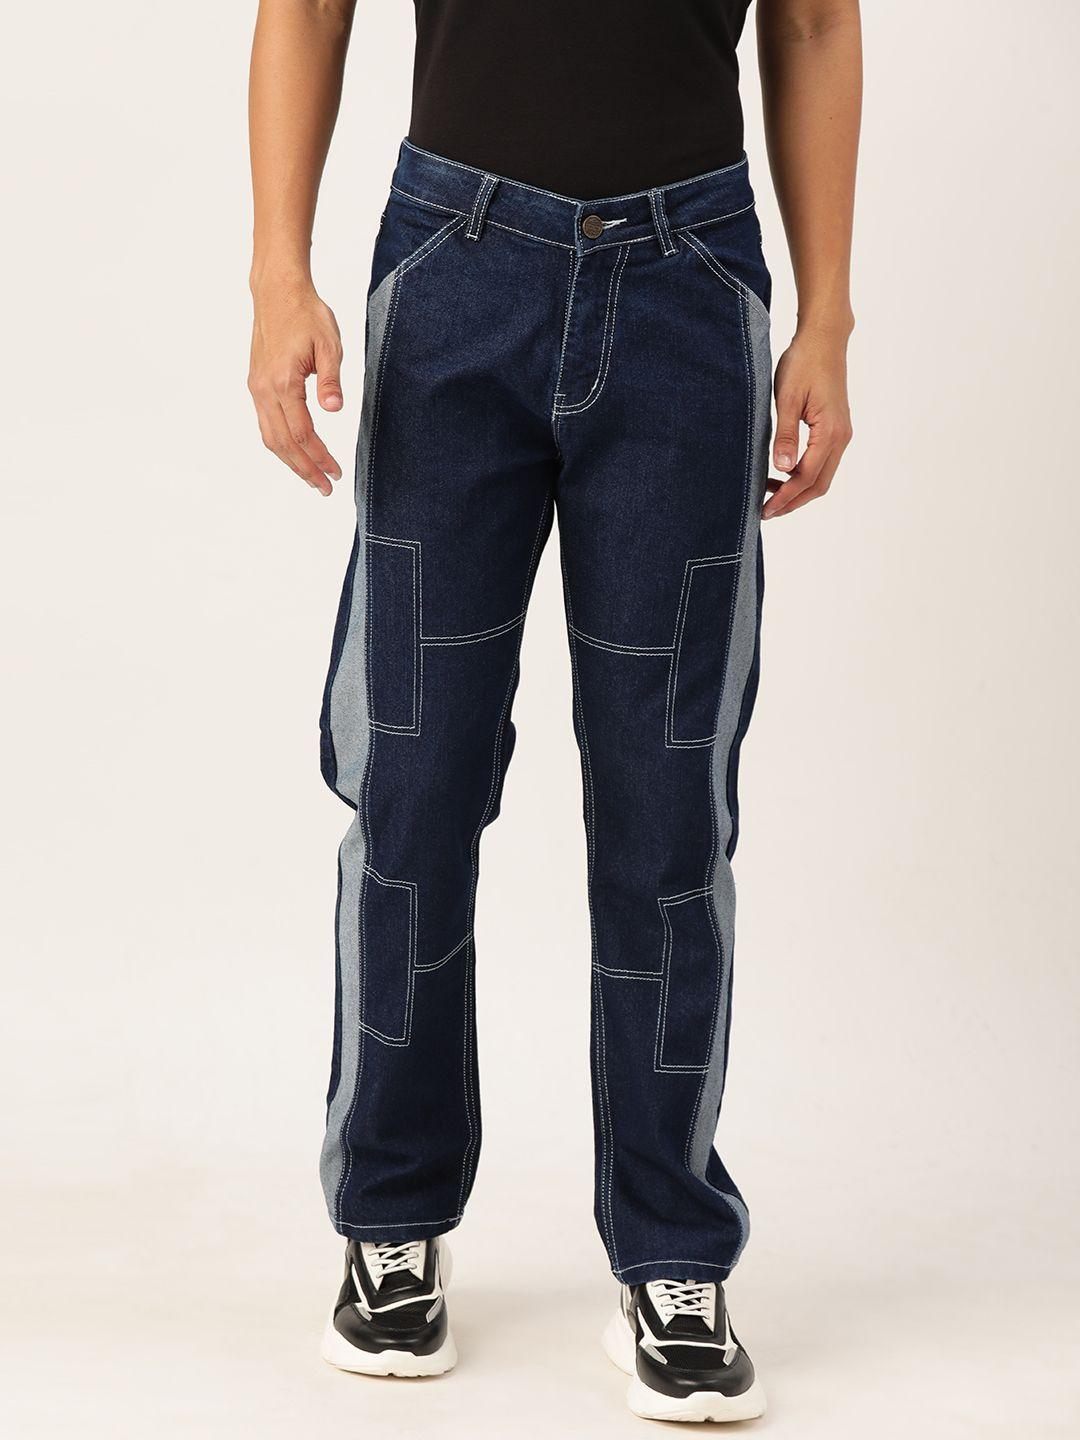 paris hamilton men straight fit colourblocked stretchable jeans